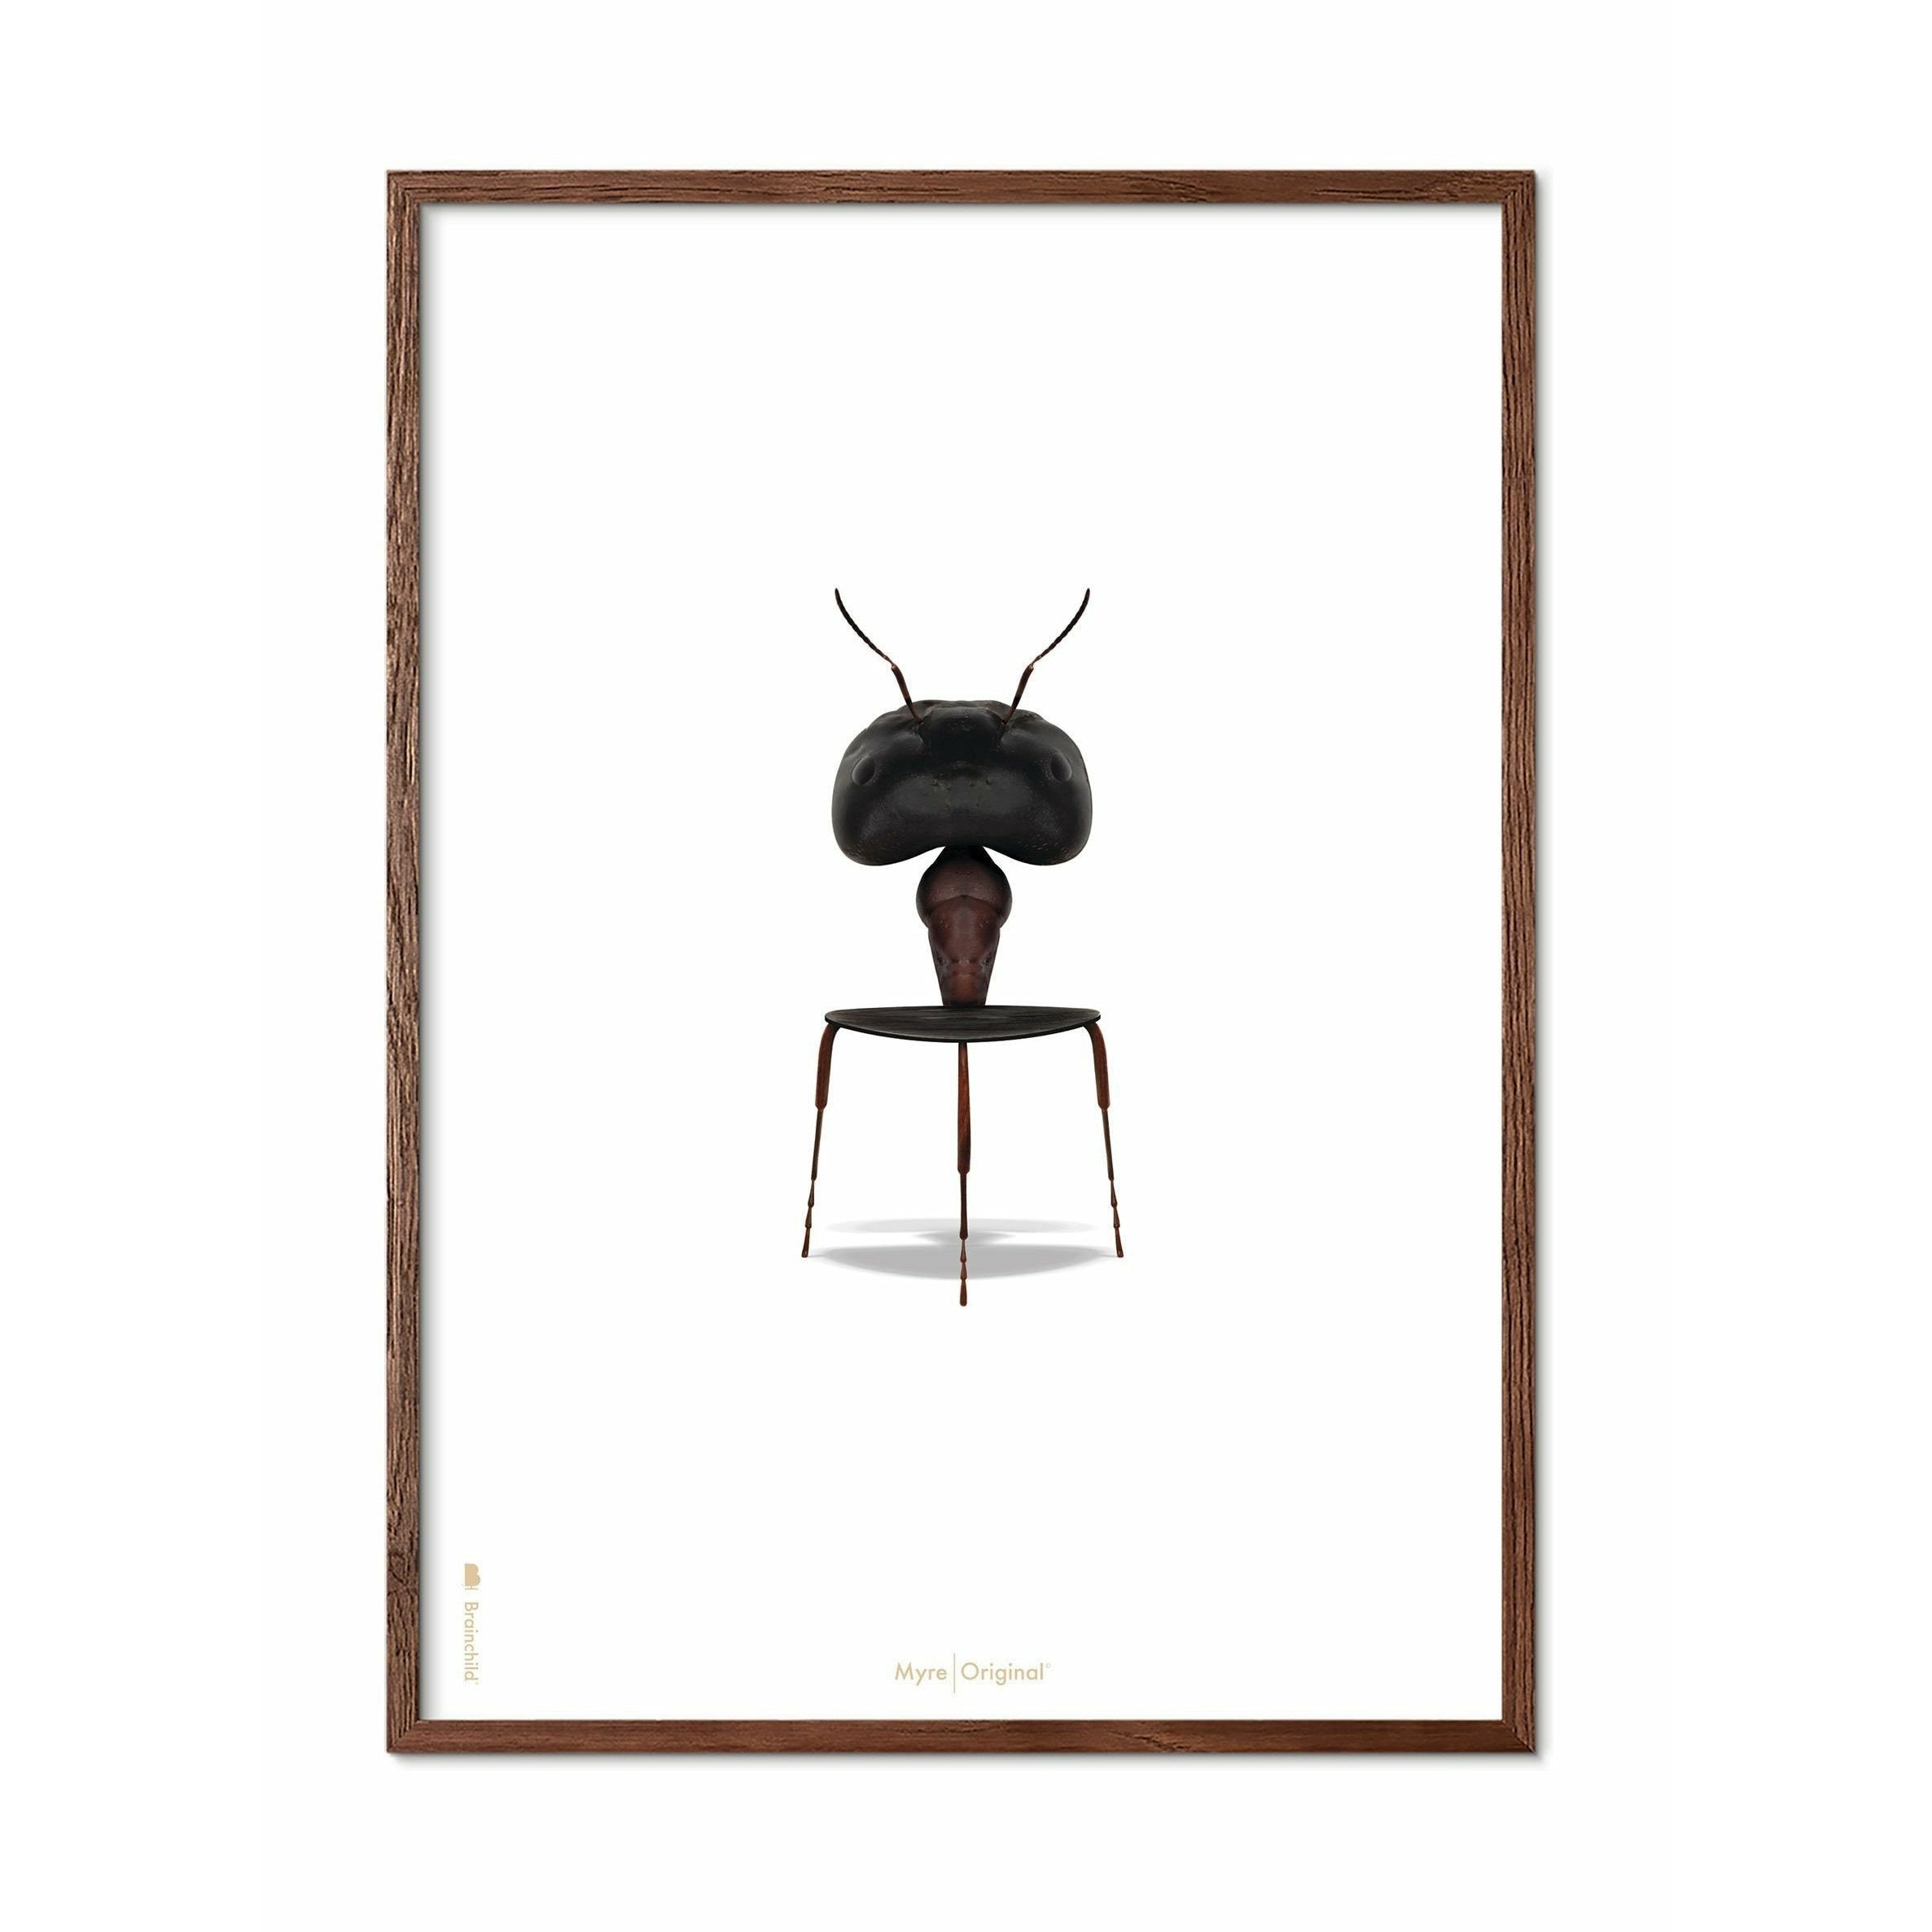 Póster clásico de hormigas de creación, marco de madera oscura 30x40 cm, fondo blanco